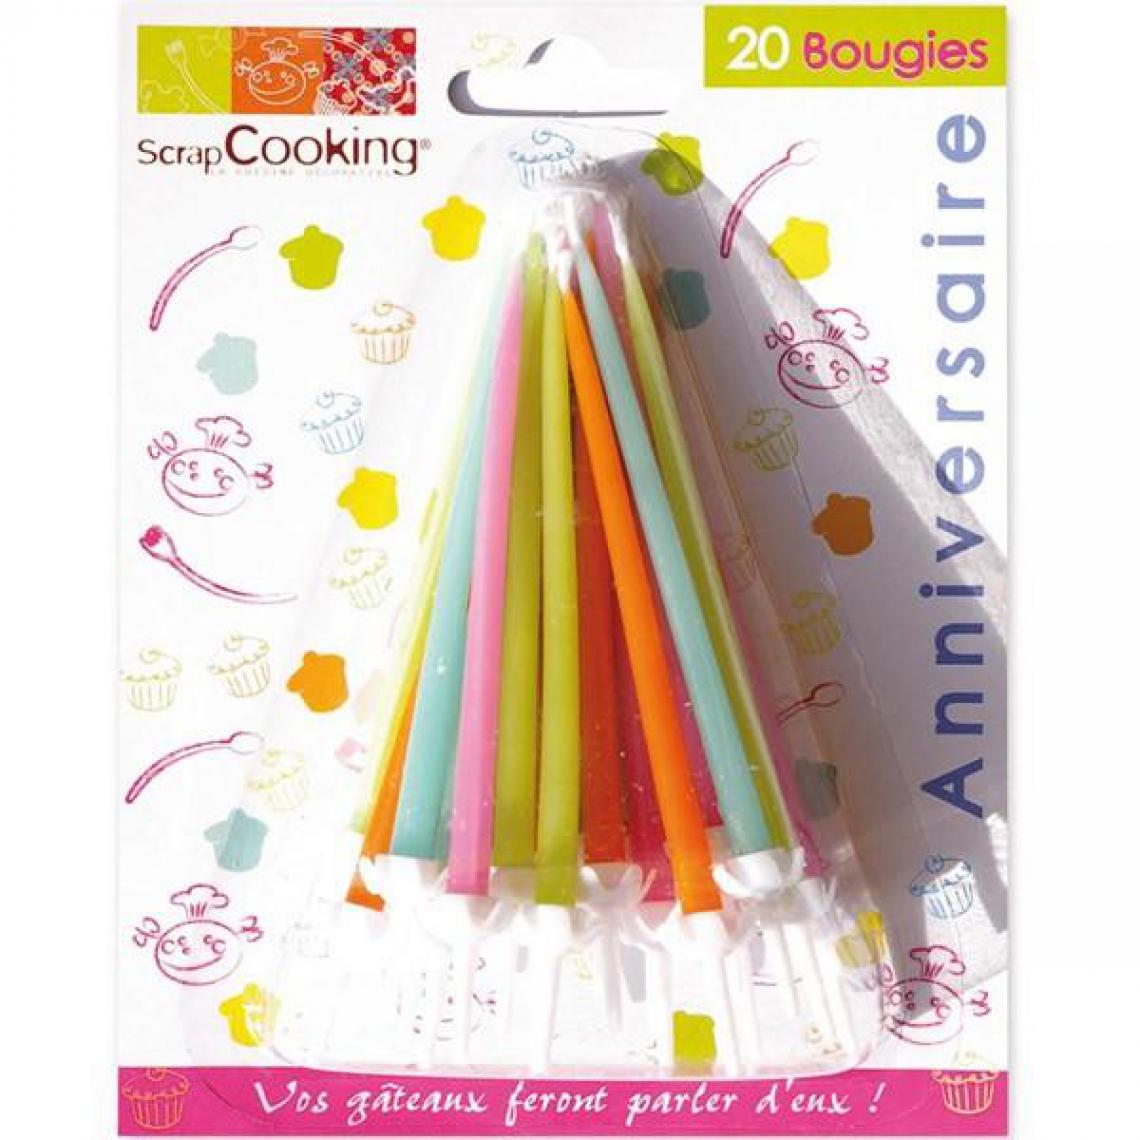 Scrapcooking - 20 bougies d'anniversaire colorées - Bougies